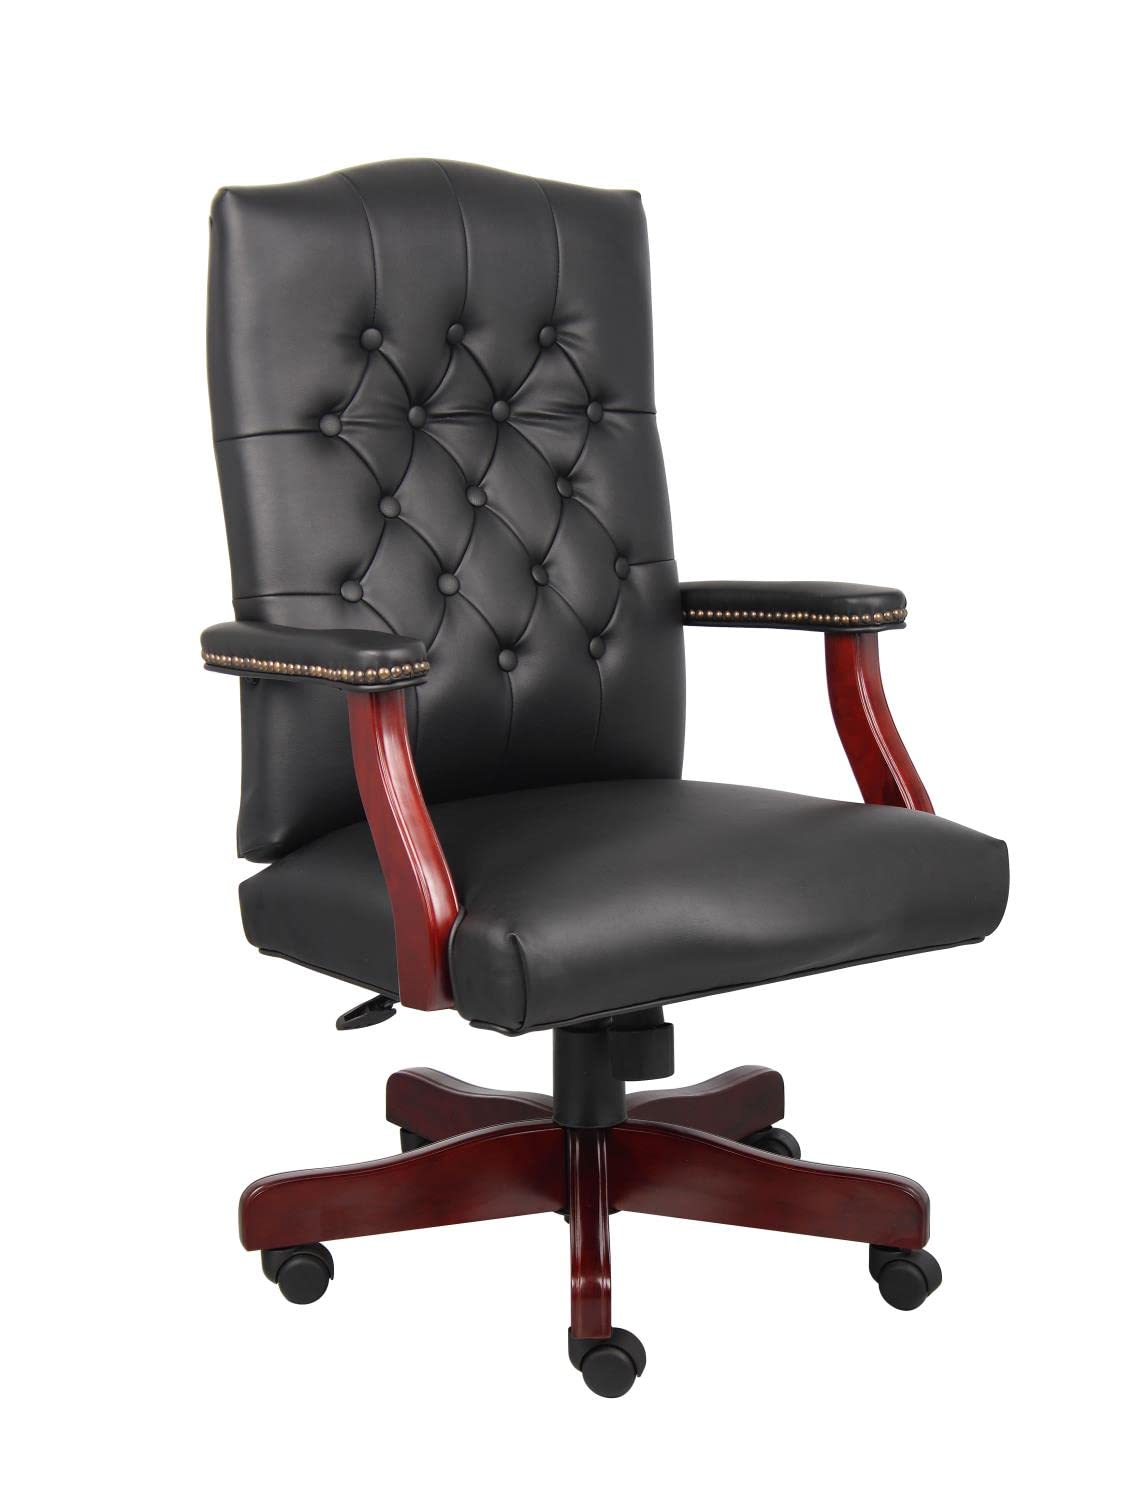 Boss Office Products Офисные товары Classic Executive Caressoft Chair с отделкой из красного дерева черного цвета